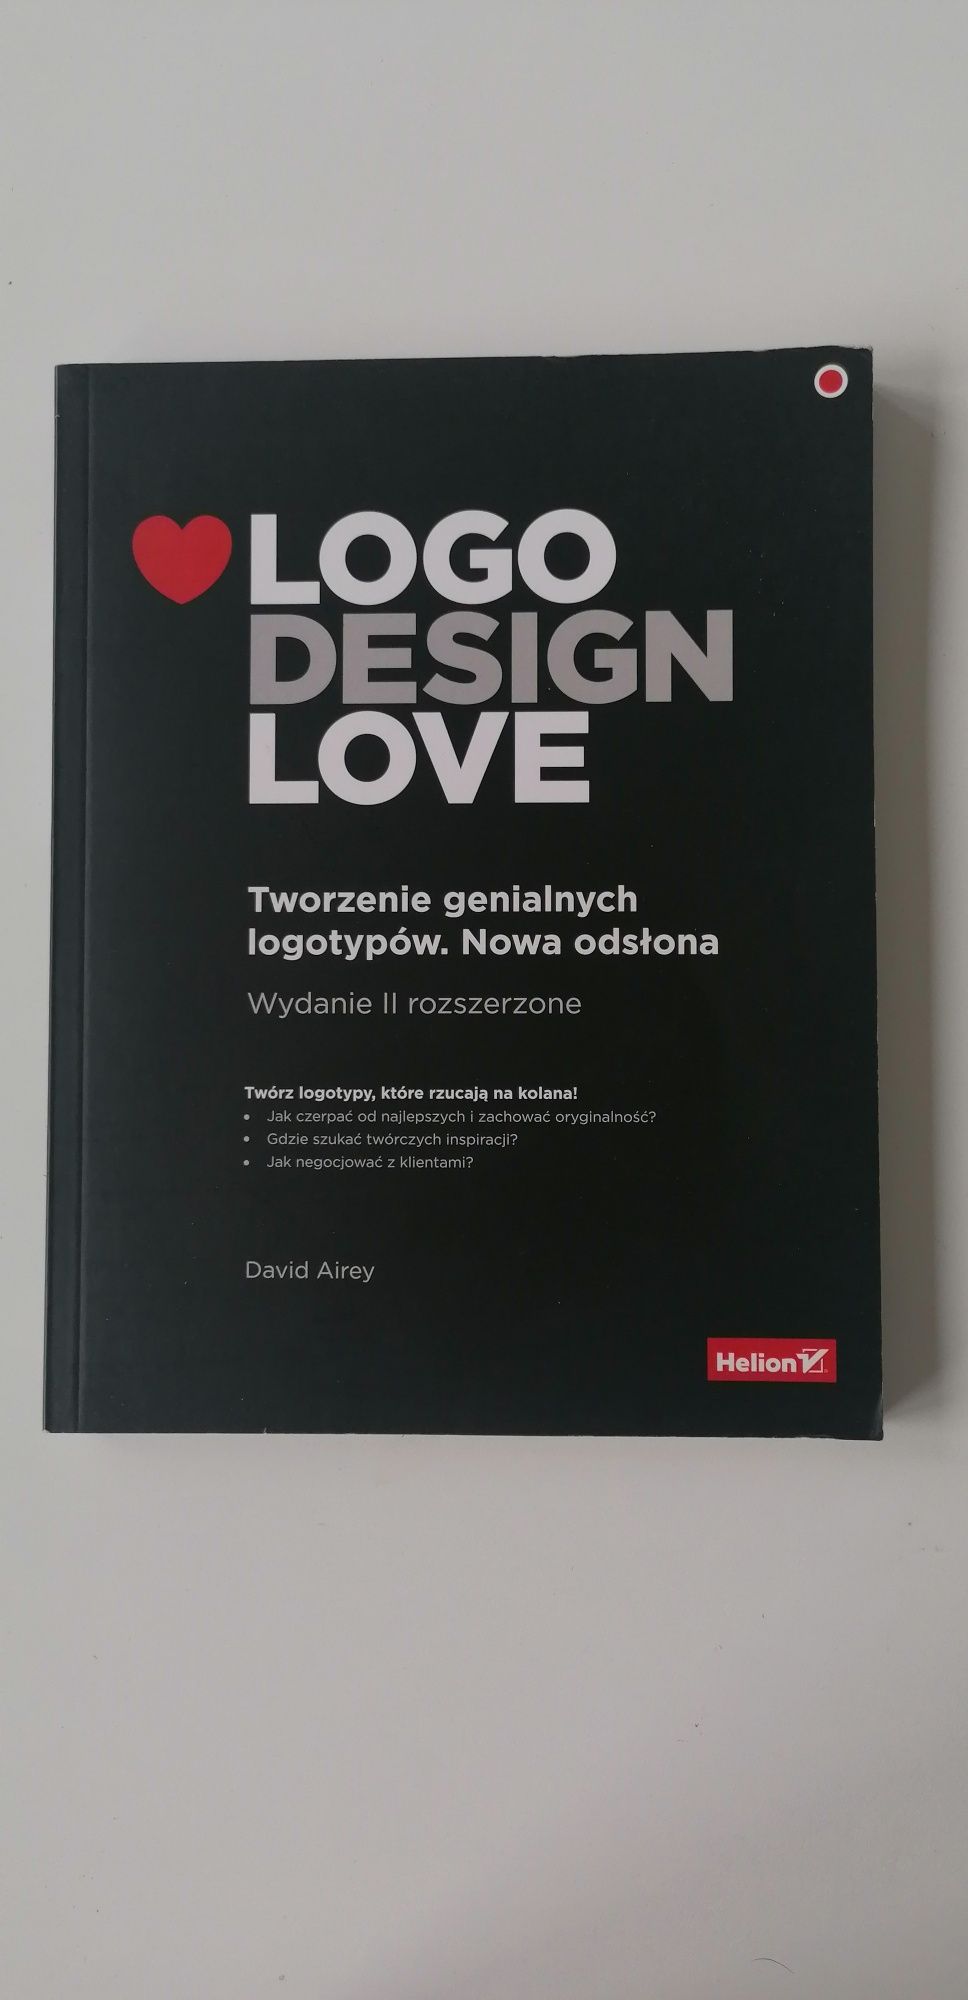 Logo Design Love Tworzenie genialnych logotypów. Nowa odsłona